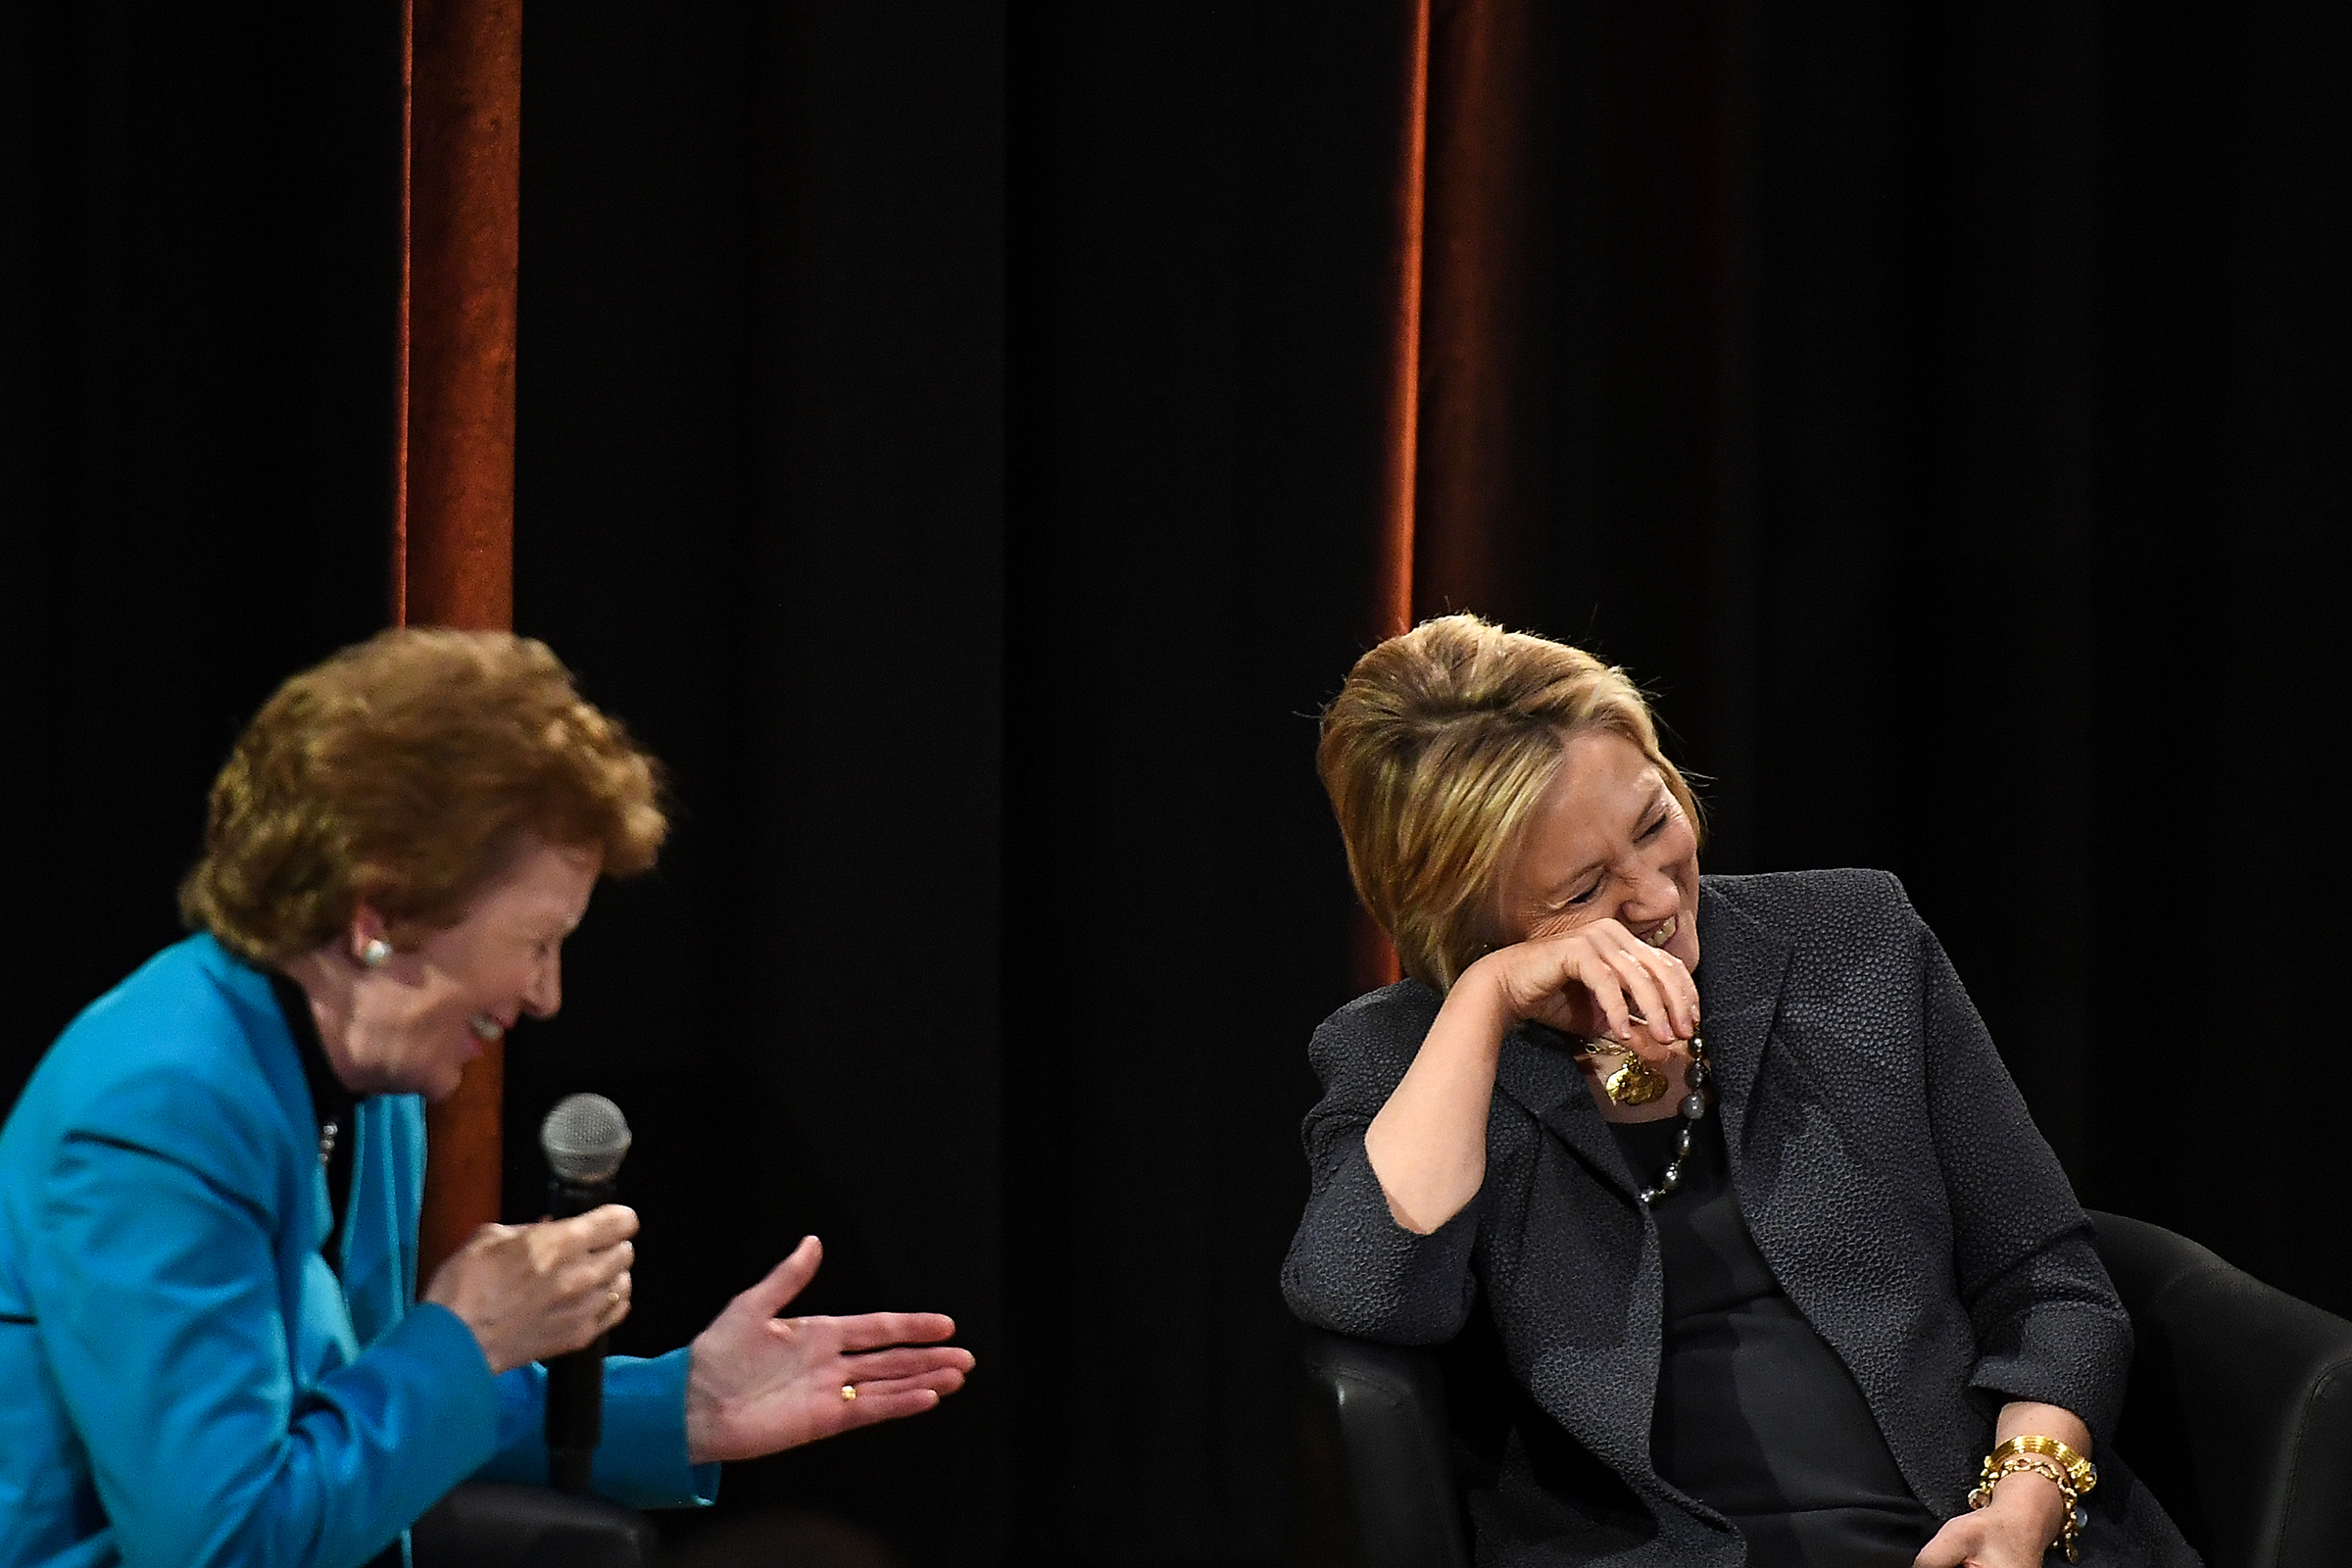 <p>Бывший госсекретарь США Хиллари Клинтон (справа) и экс-президент Ирландии Мэри Робинсон во время лекции в Тринити-колледже в Дублине, 22 июня 2018 года<br />
&nbsp;</p>
